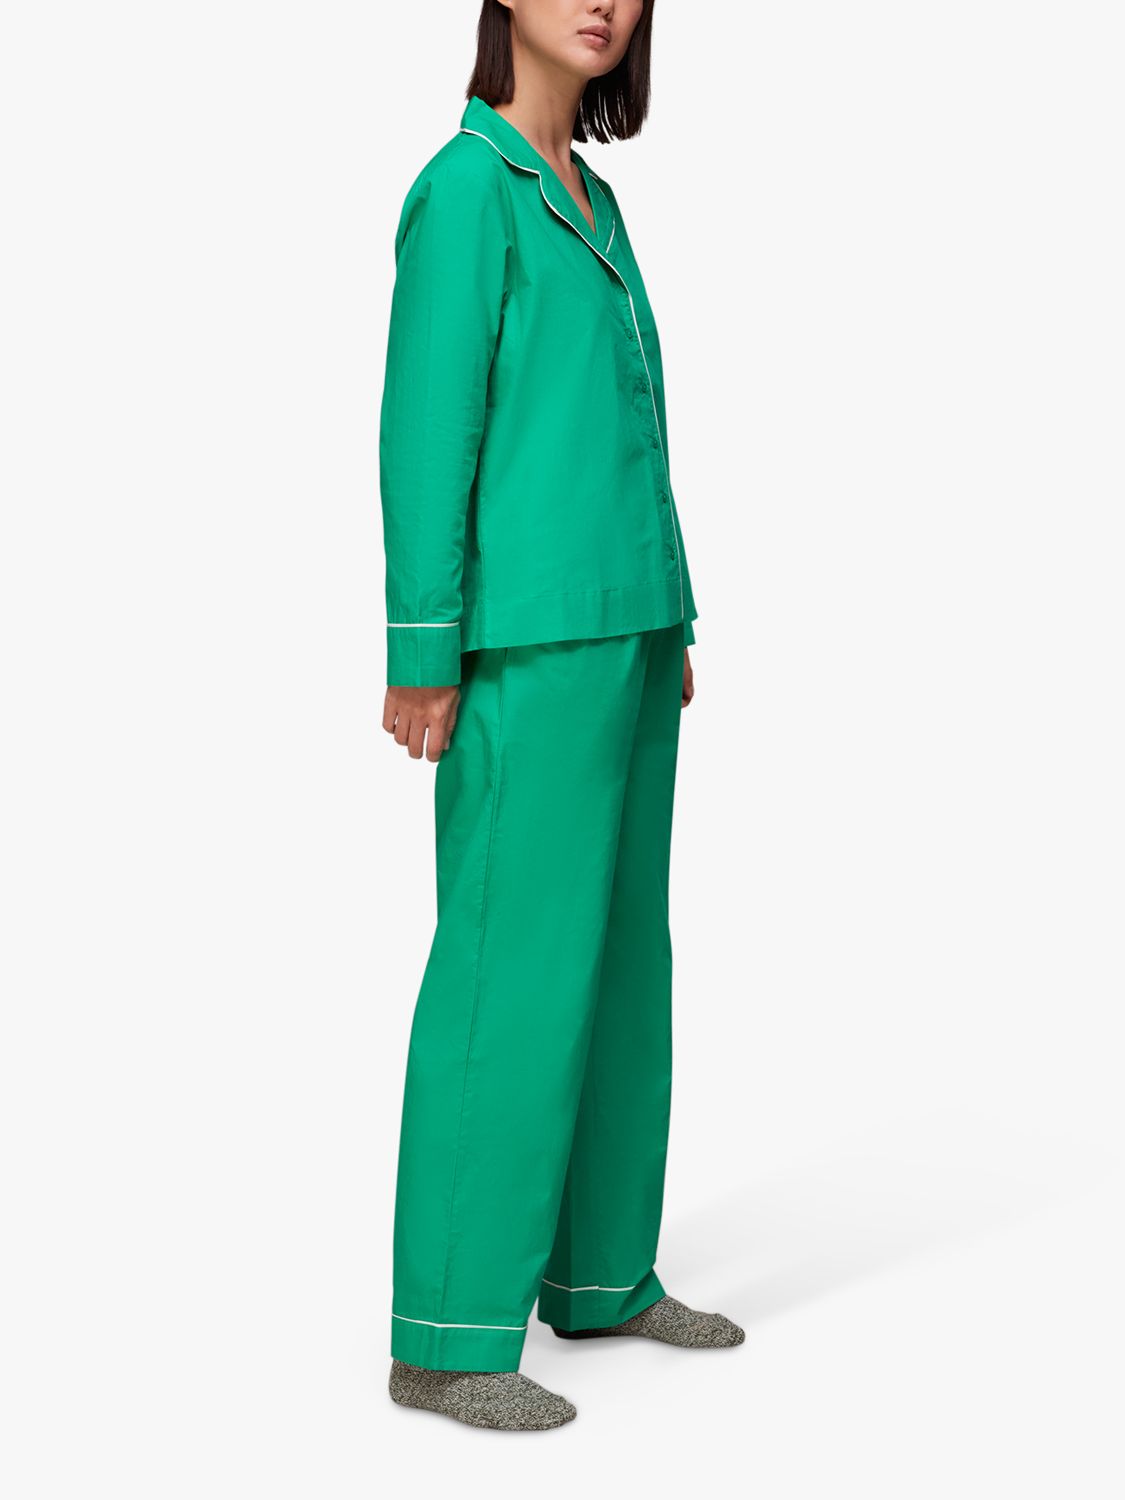 Jonny Satin Pajama Set - Emerald